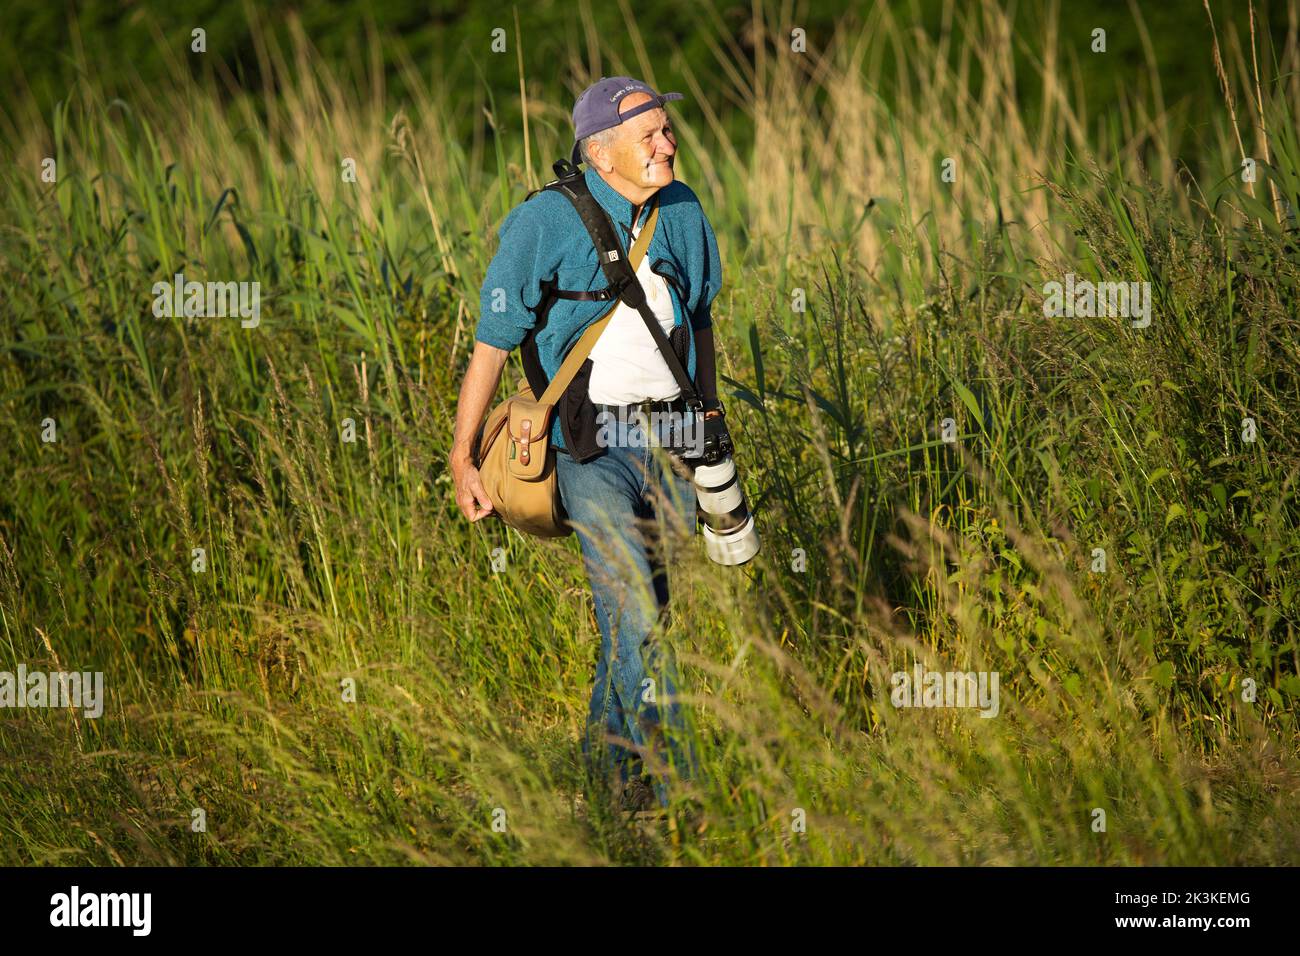 Un fotógrafo caminando al aire libre con su equipo de cámara Foto de stock